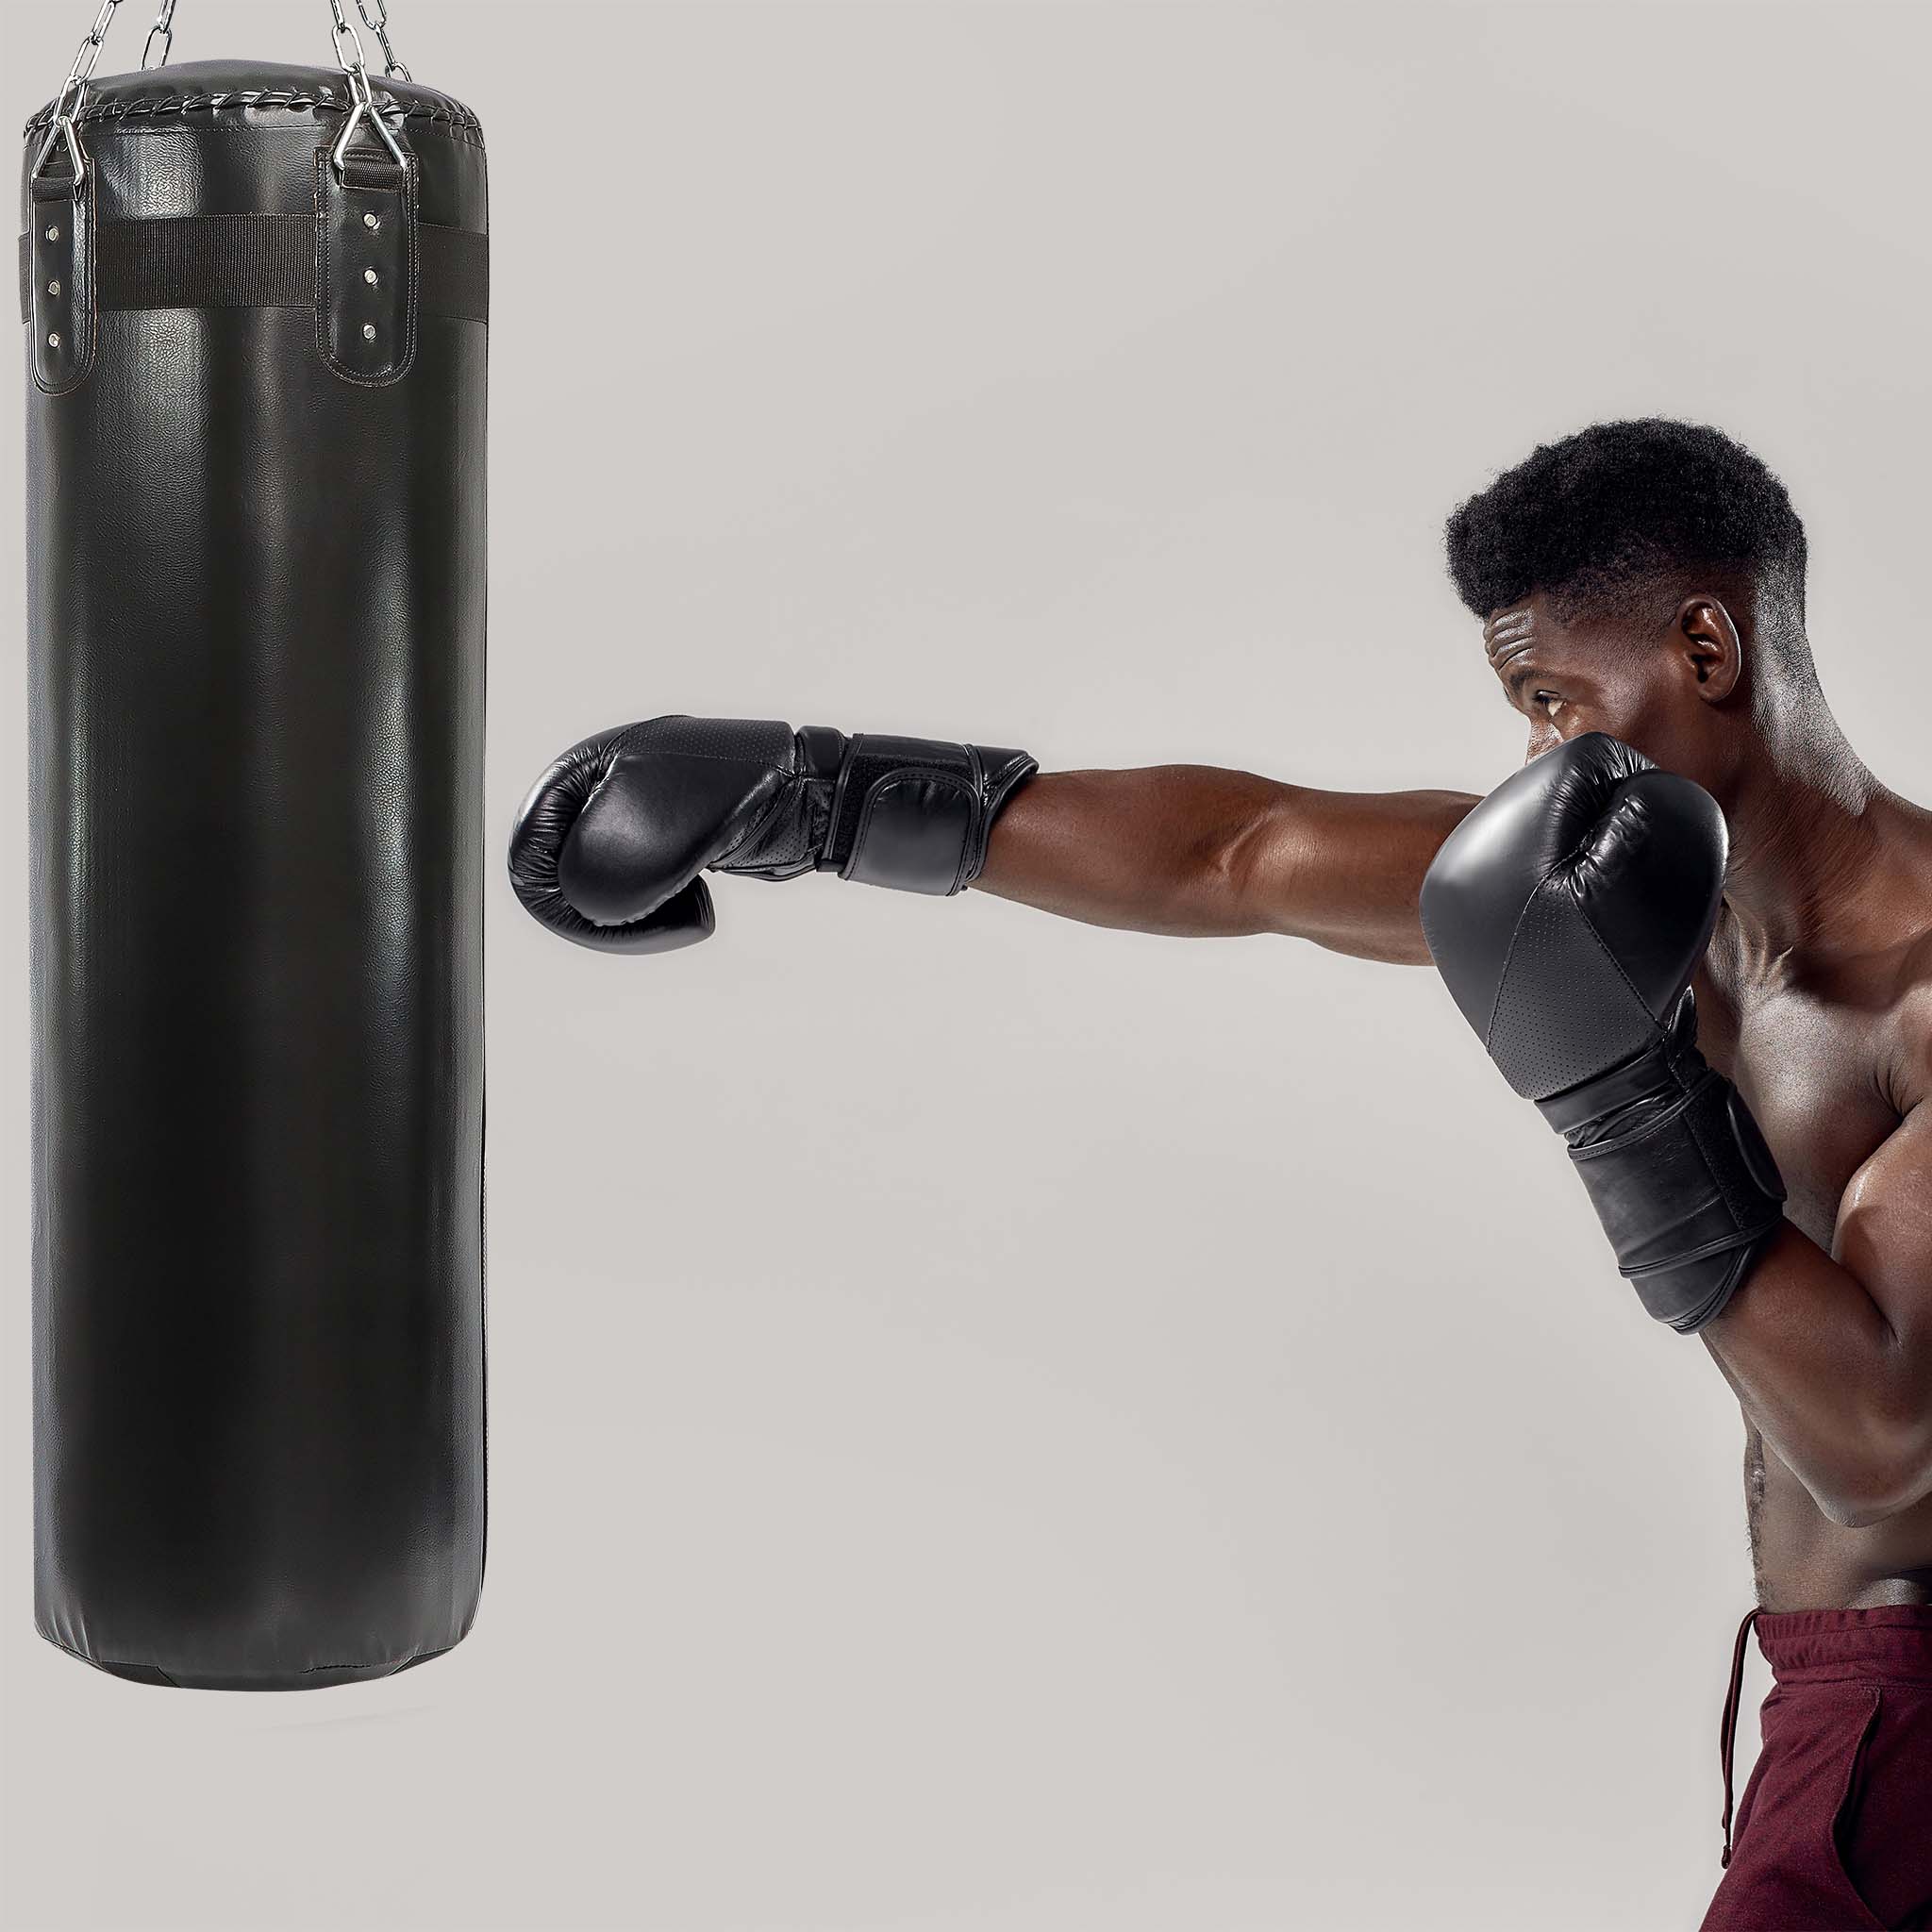 ENTRANAMIENTO BOXEO Sin SACO para PRINCIPIANTES 🏅 Cómo Entrenar Boxeo en  Casa y SIN Material 